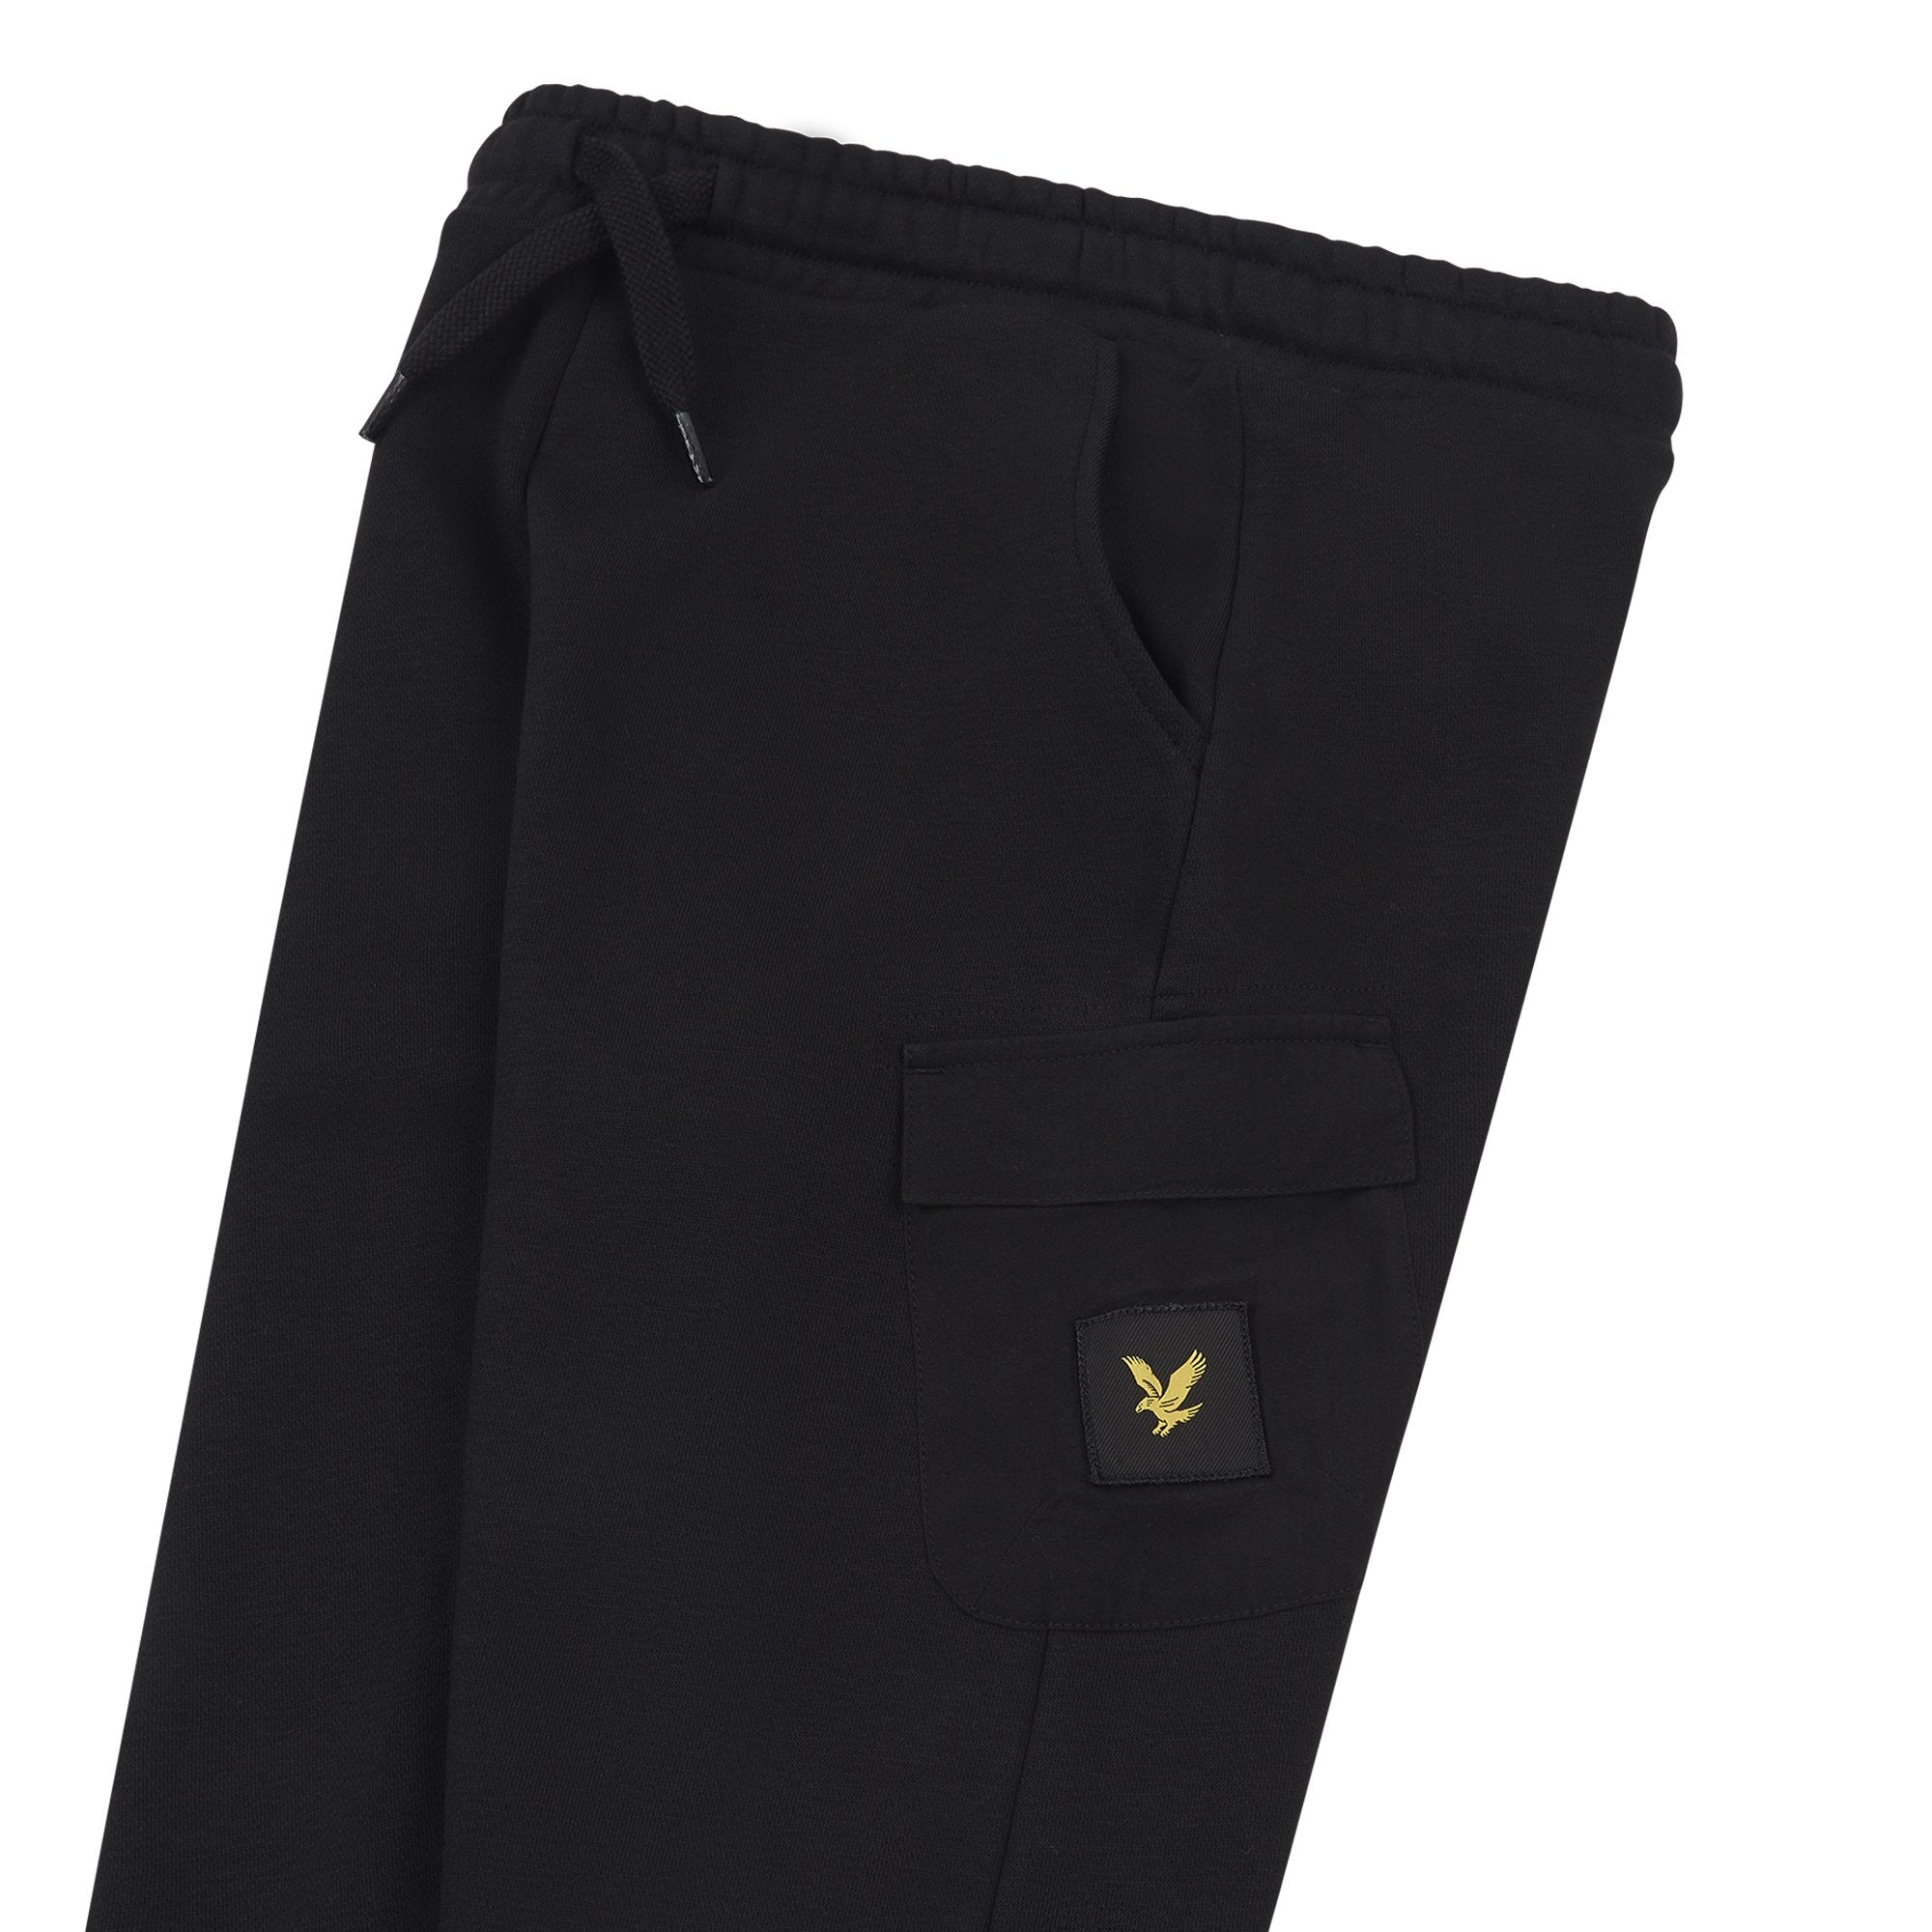 Jongens Pocket BB Sweatpant Black van Lyle & Scott in de kleur Black in maat 170-176.